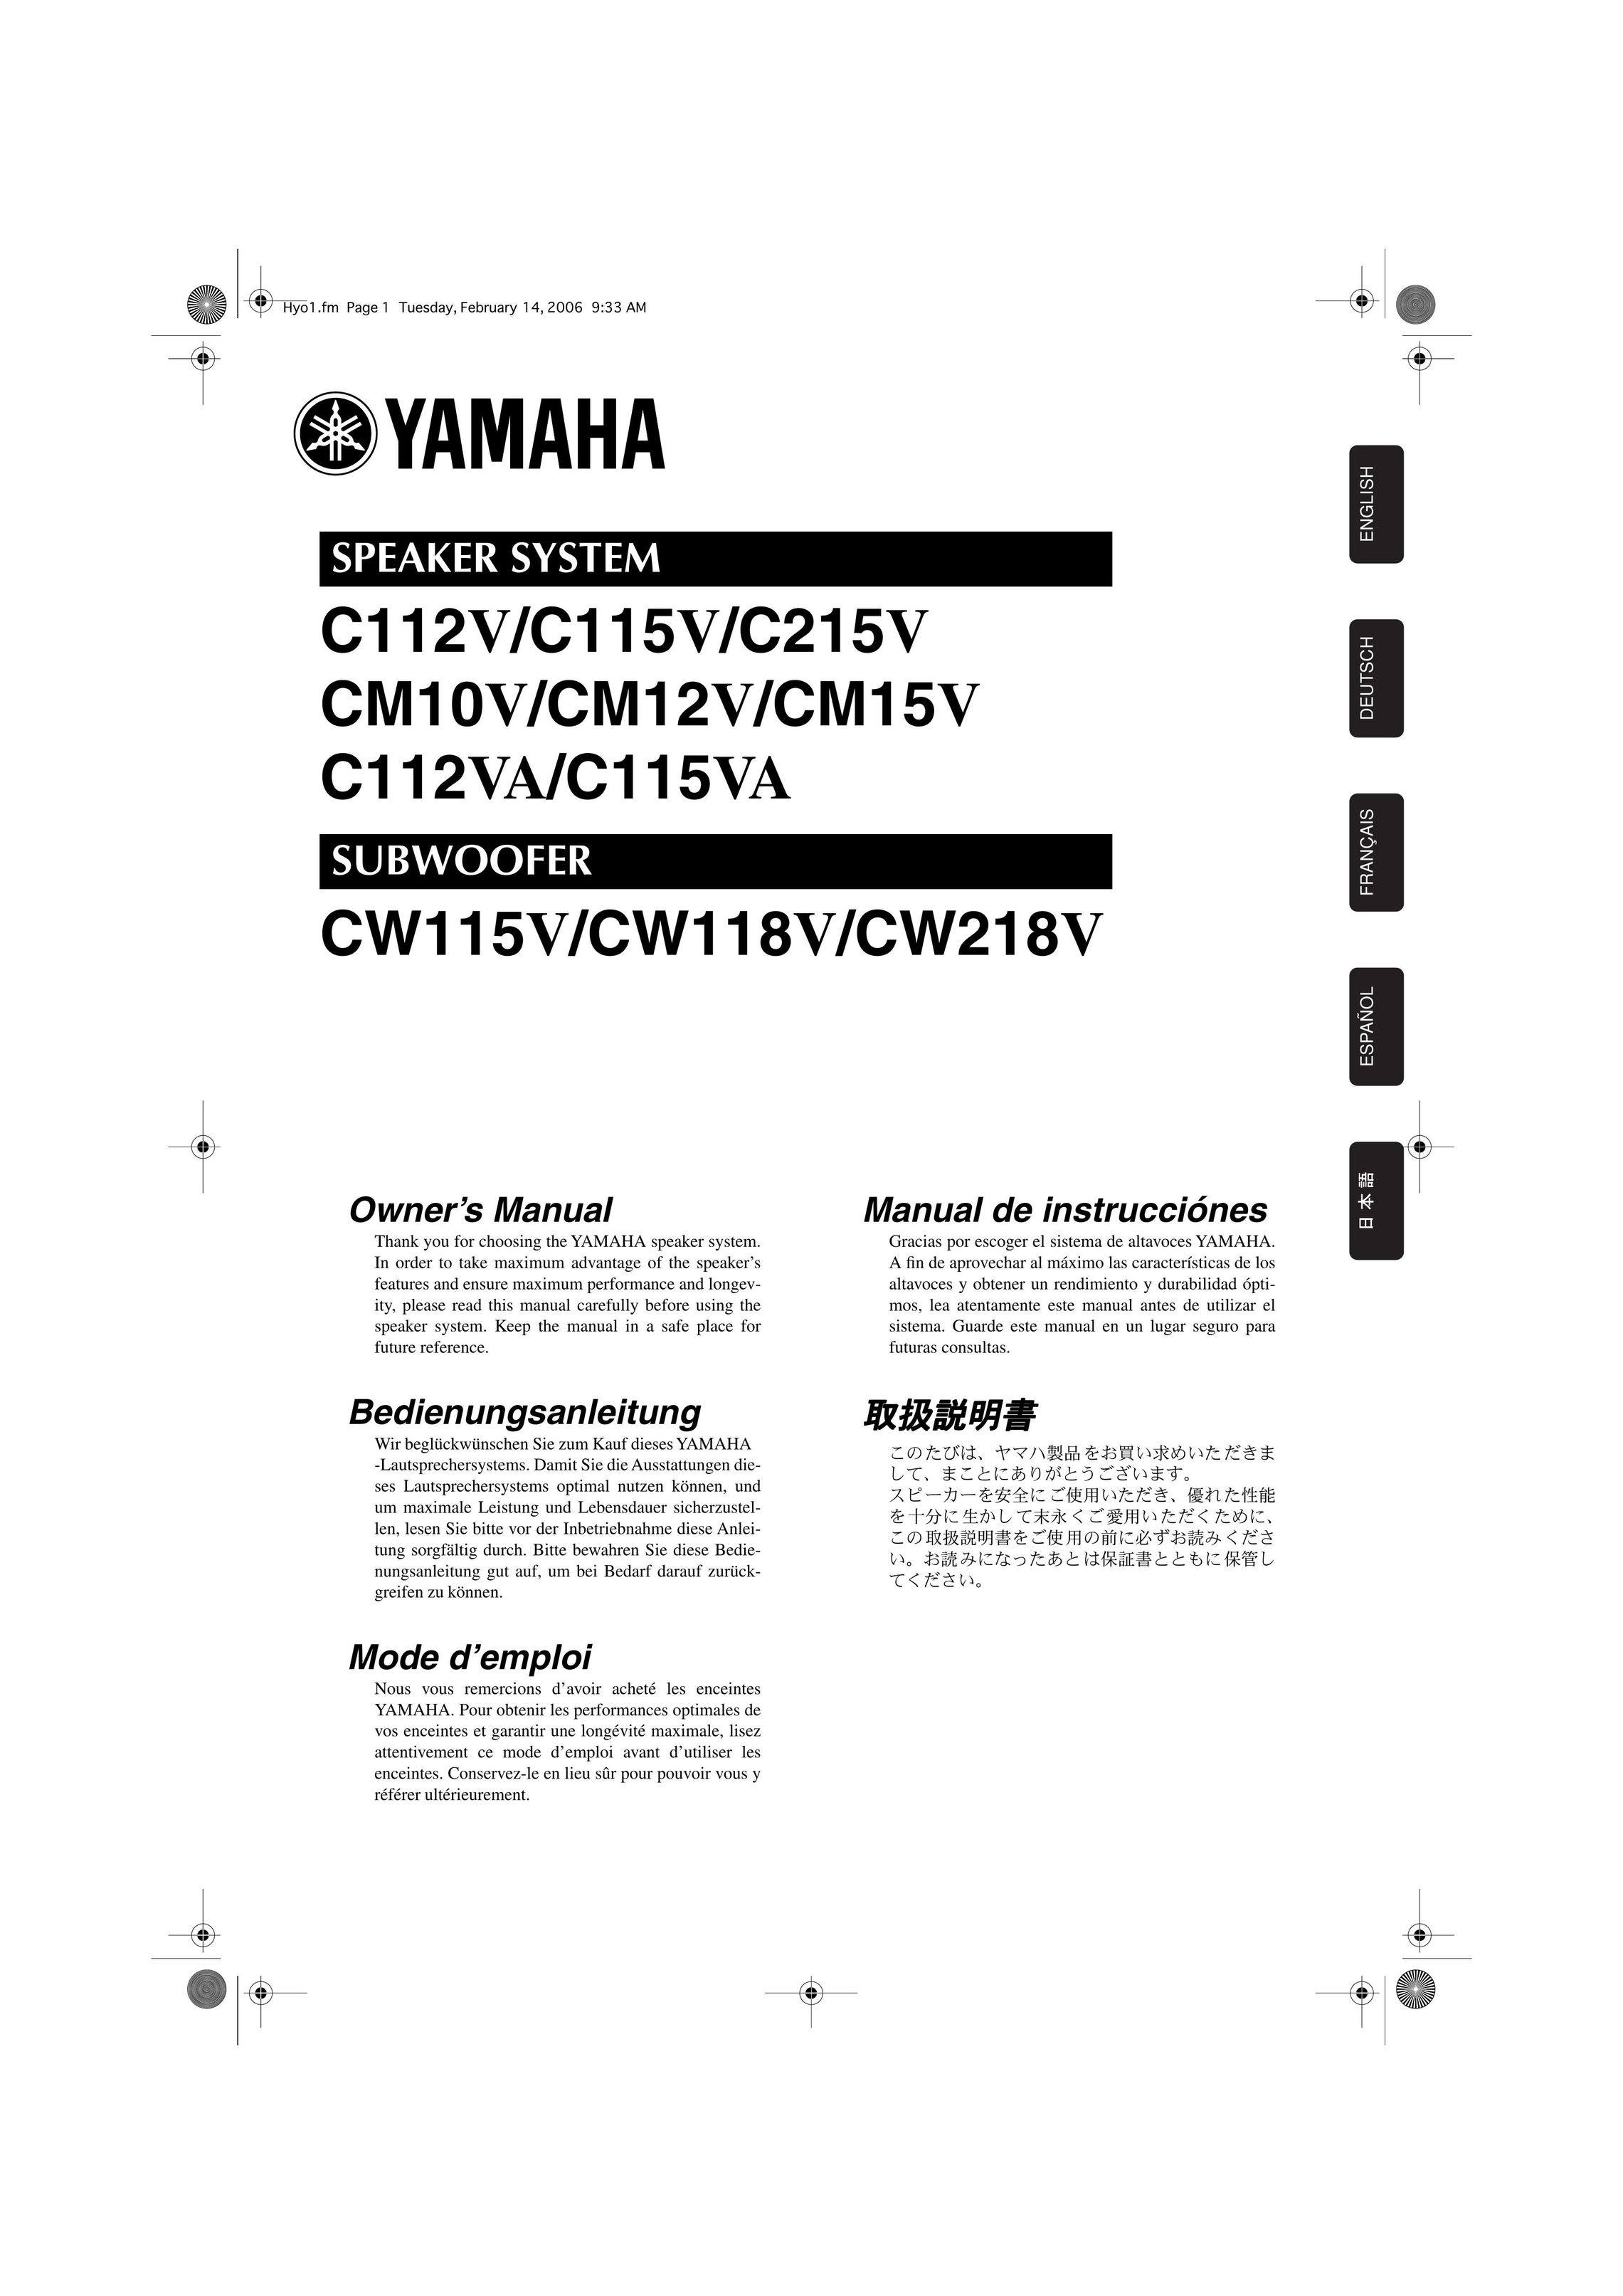 Yamaha CM12V Portable Speaker User Manual